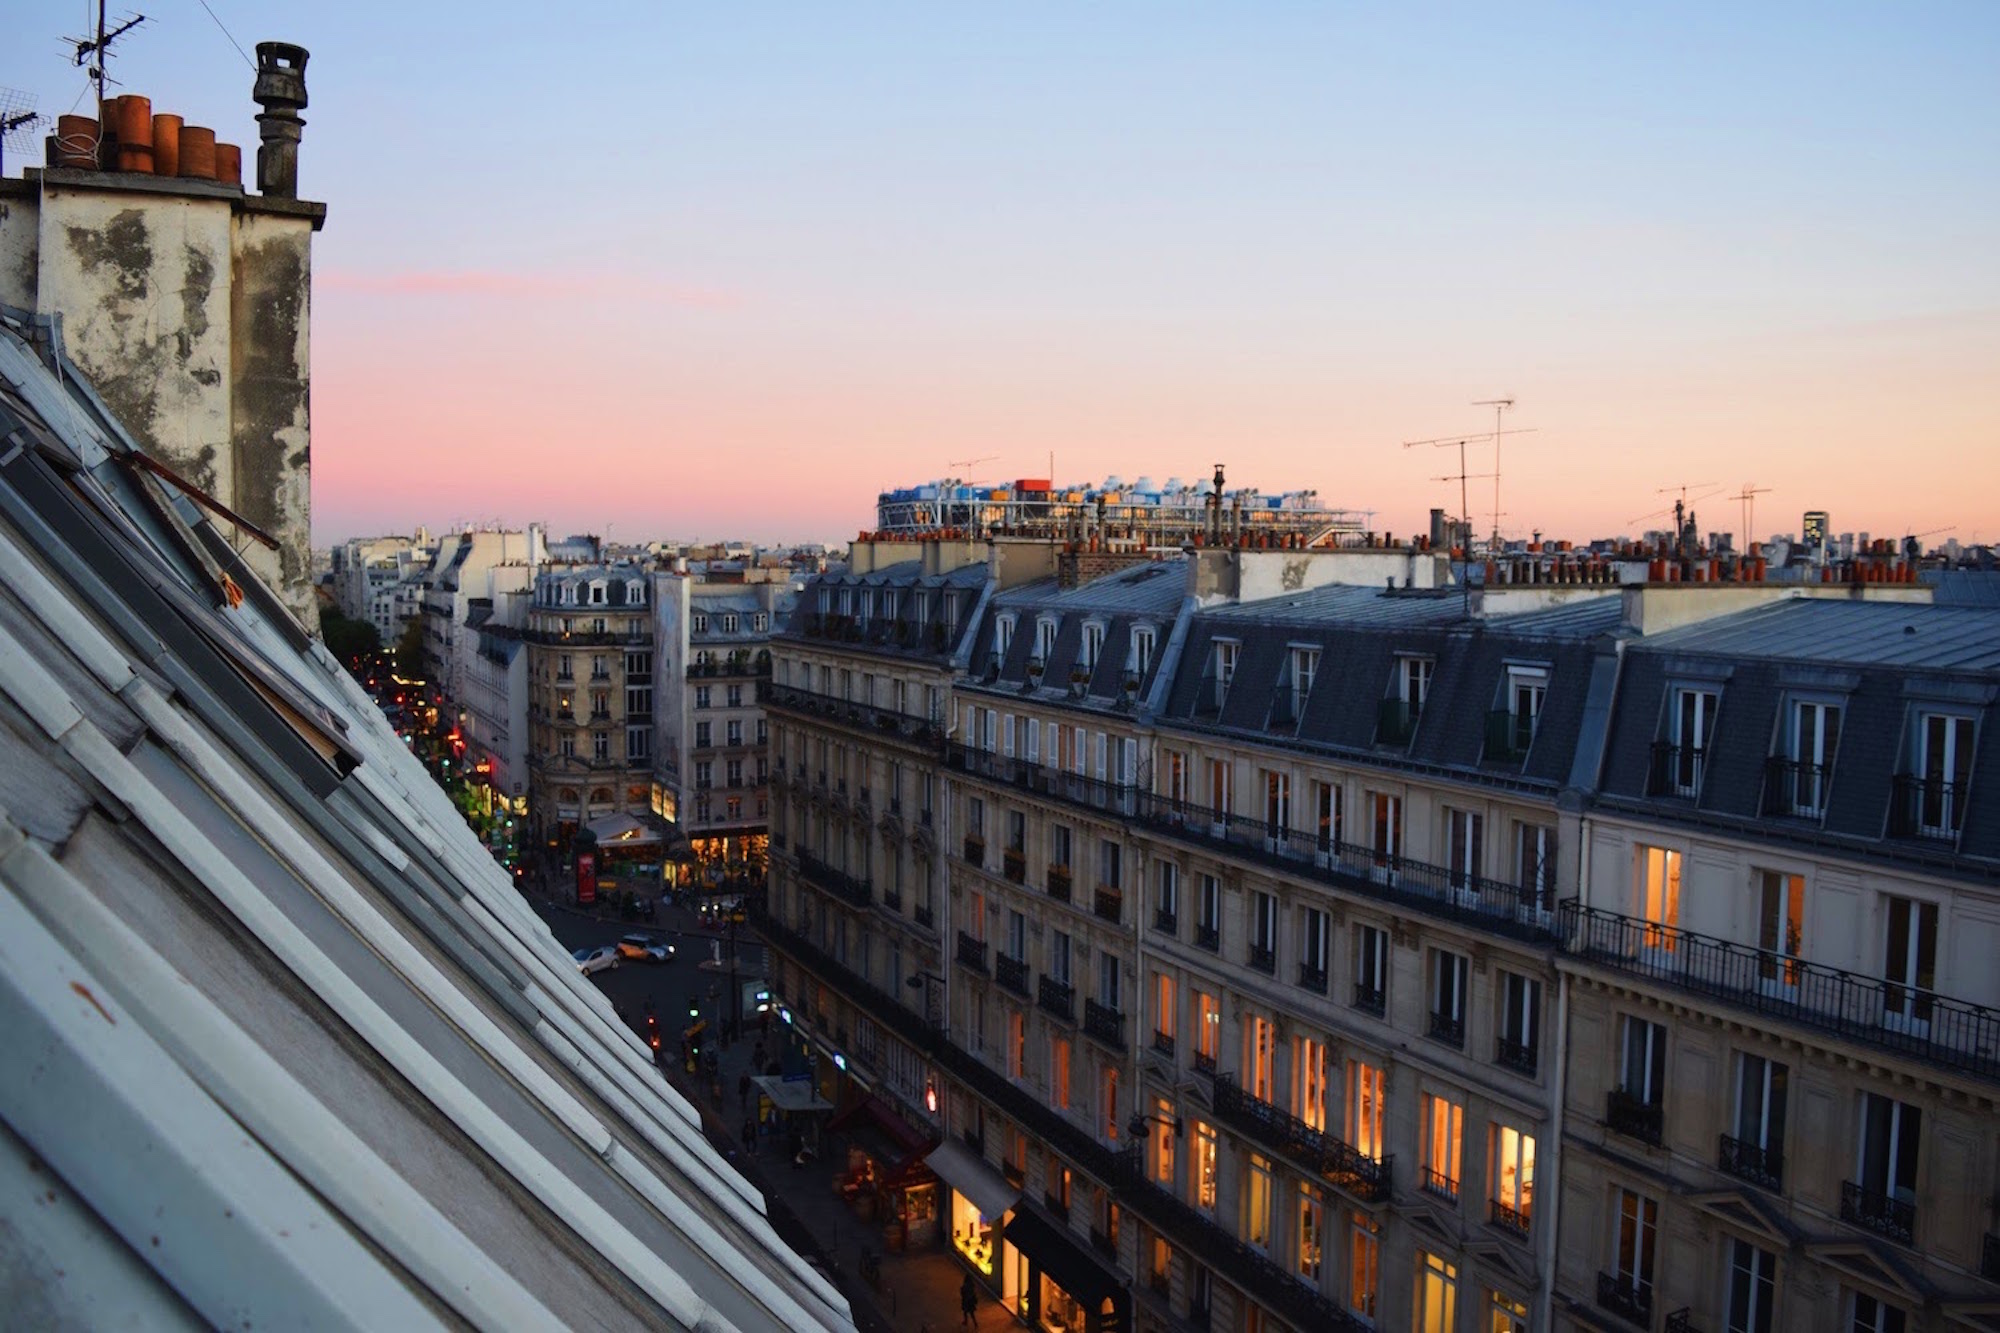 Parisian Rooftops at Dusk